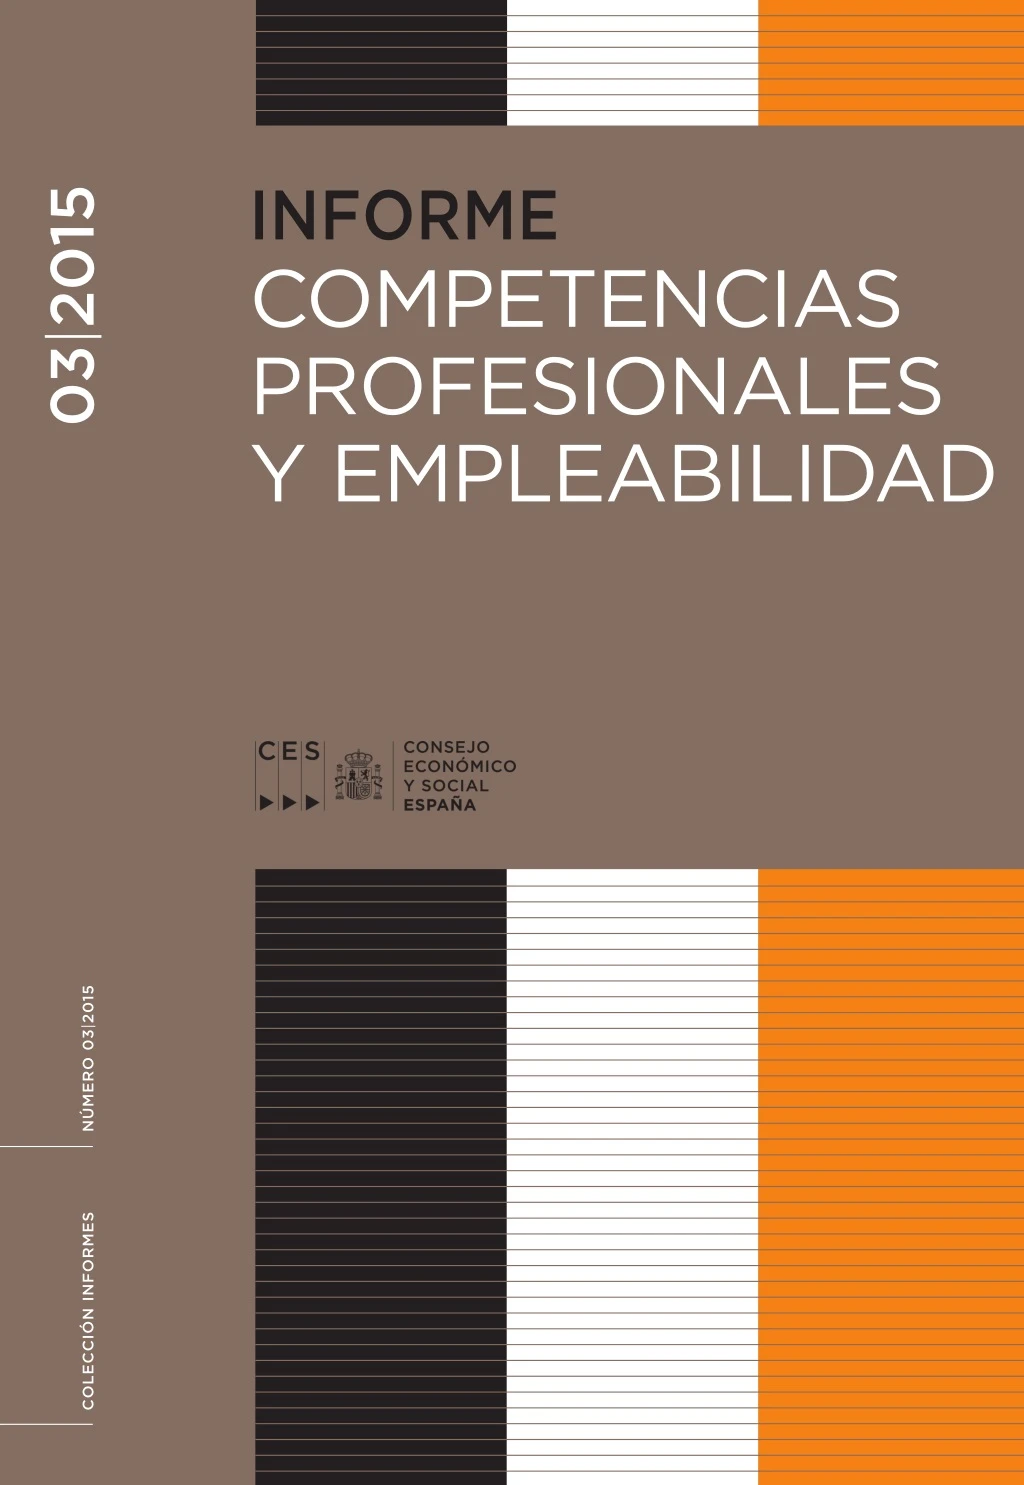 informe competencias profesionales y empleabilidad